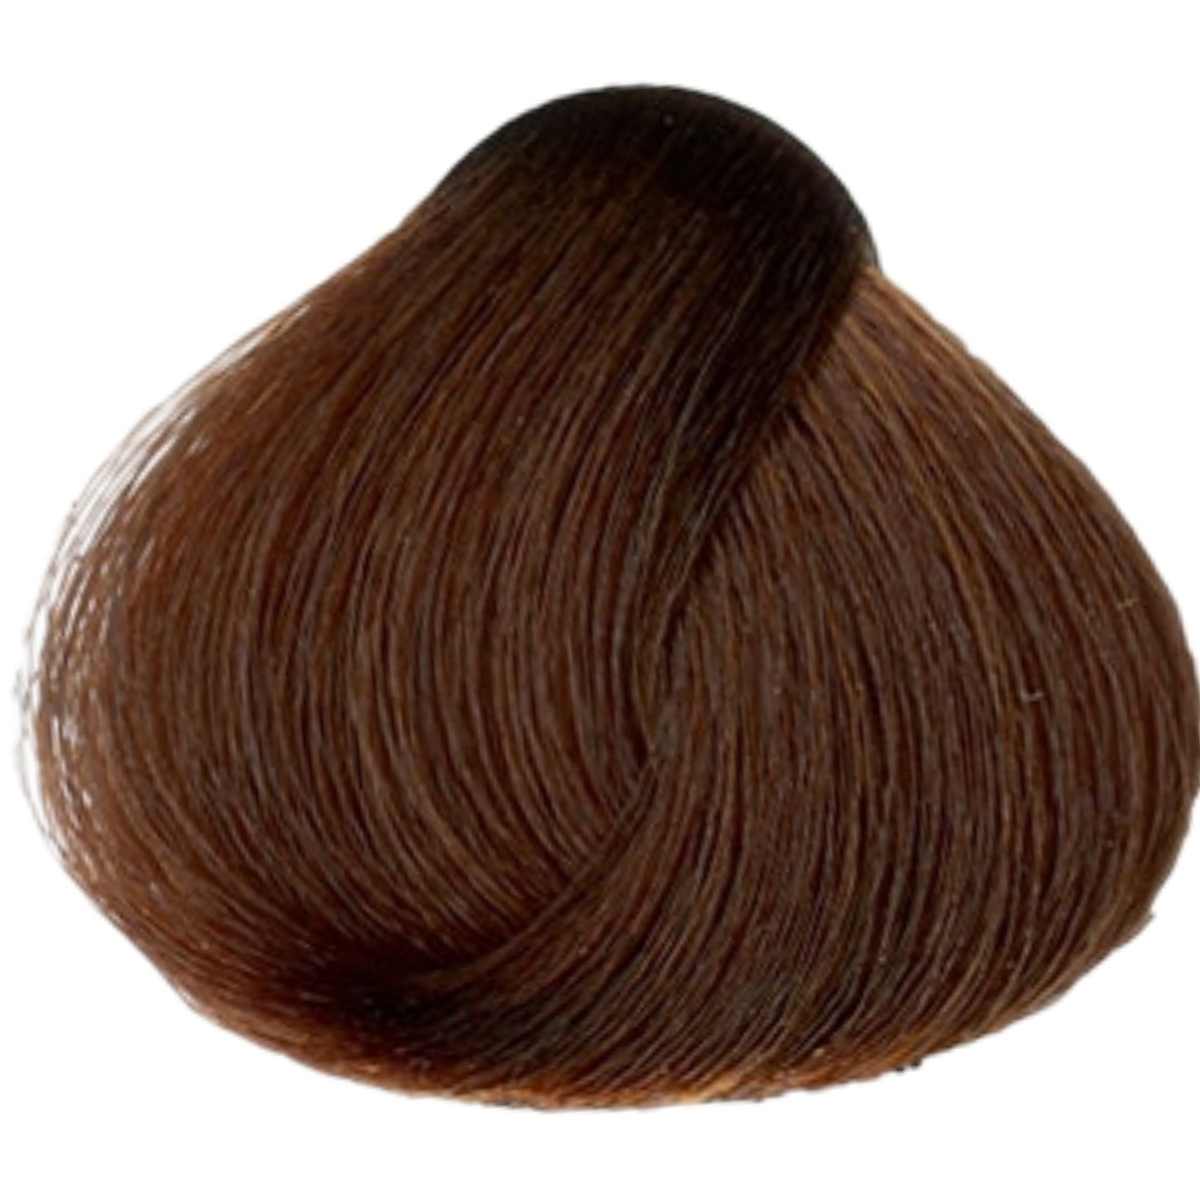 צבע שיער 6.4 DARK COPPER BLONDE פארמויטה FarmaVita צבע לשיער 60 גרם